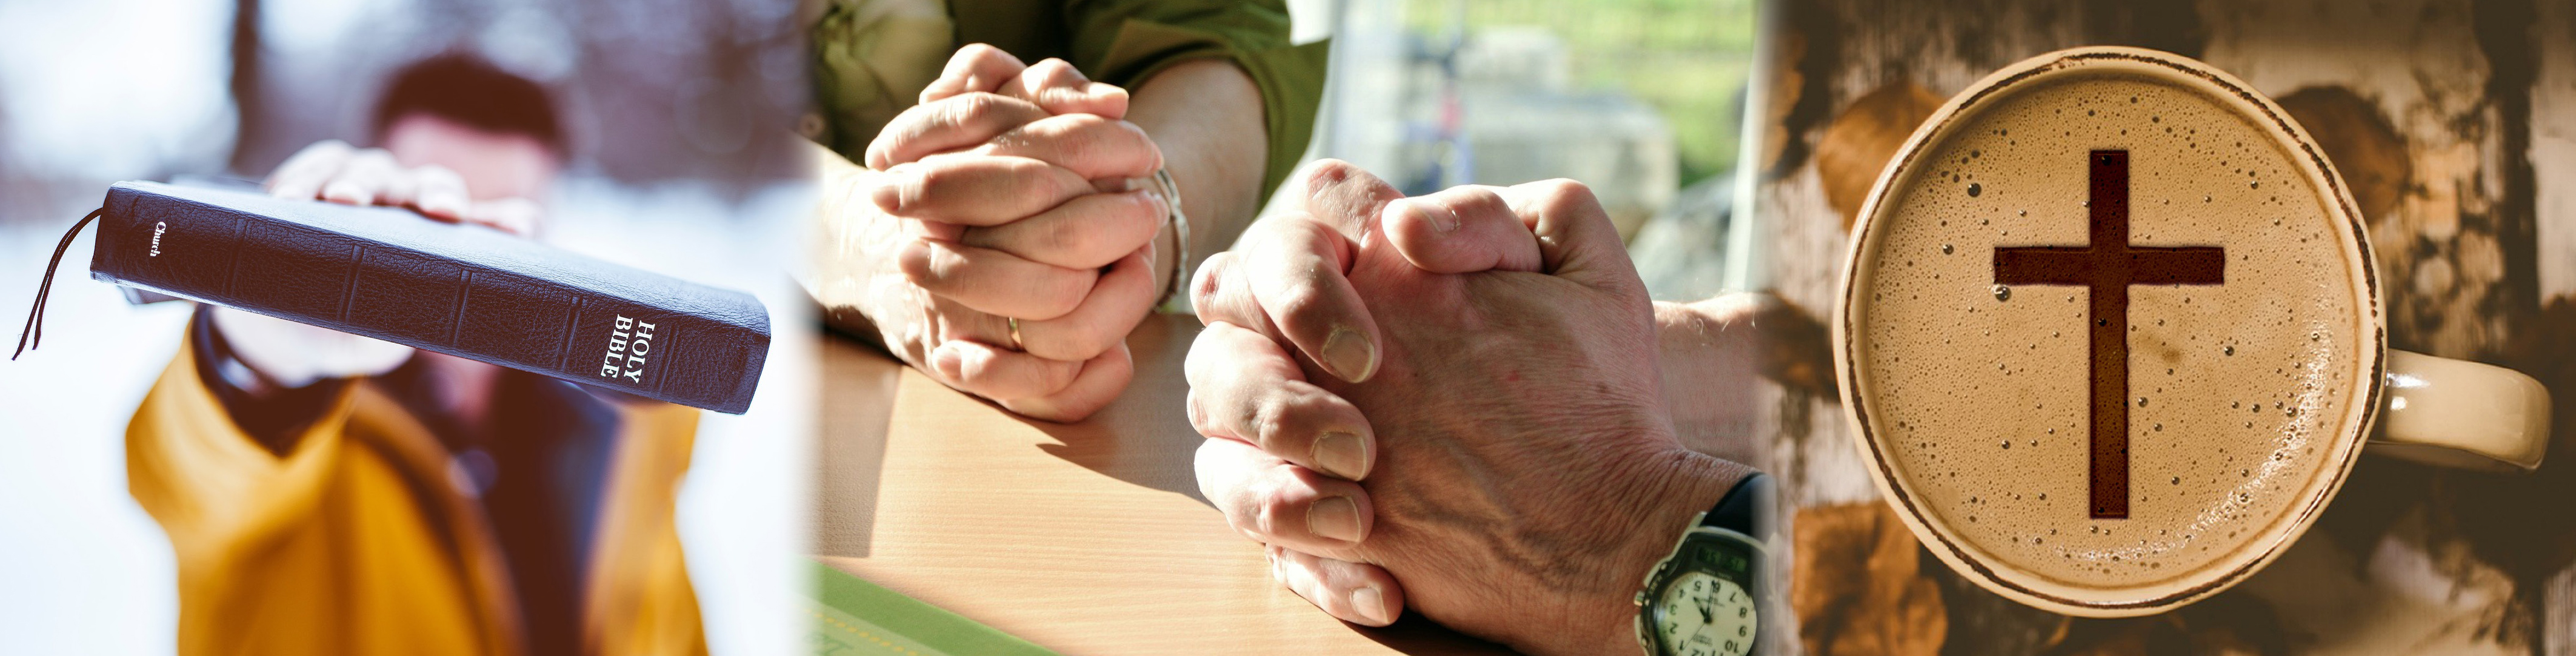 Kuvakoosteessa mies ja Raamattu, kahden rukoilevan kädet ja risti kahvimukissa.